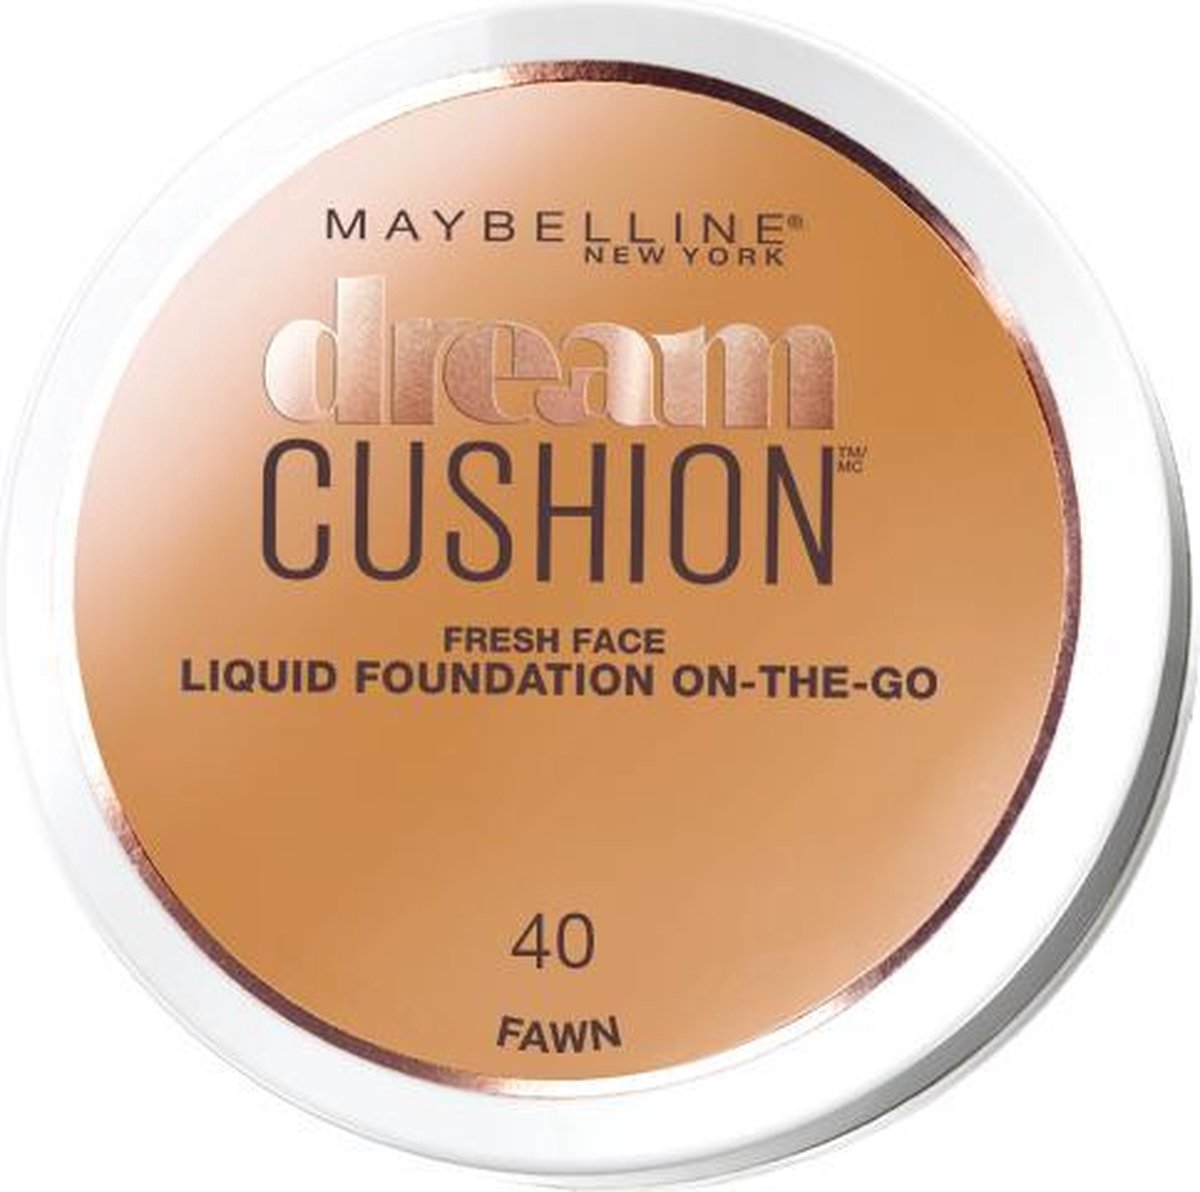 Maybelline Dream Cushion Foundation 40 Fawn Foundation